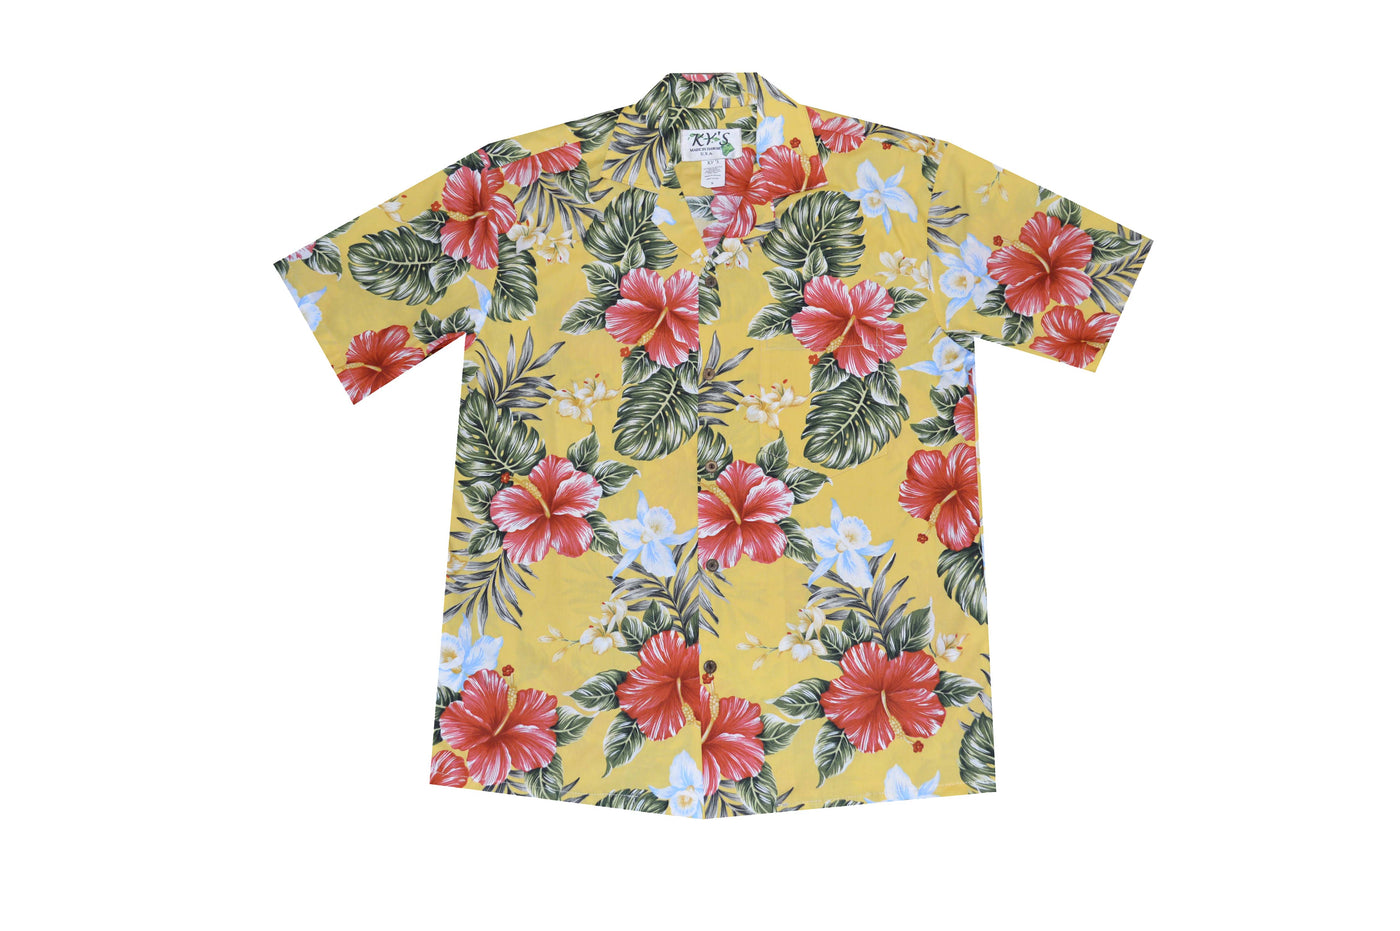 Kahala Hibiscus Men's Aloha Cotton Shirts